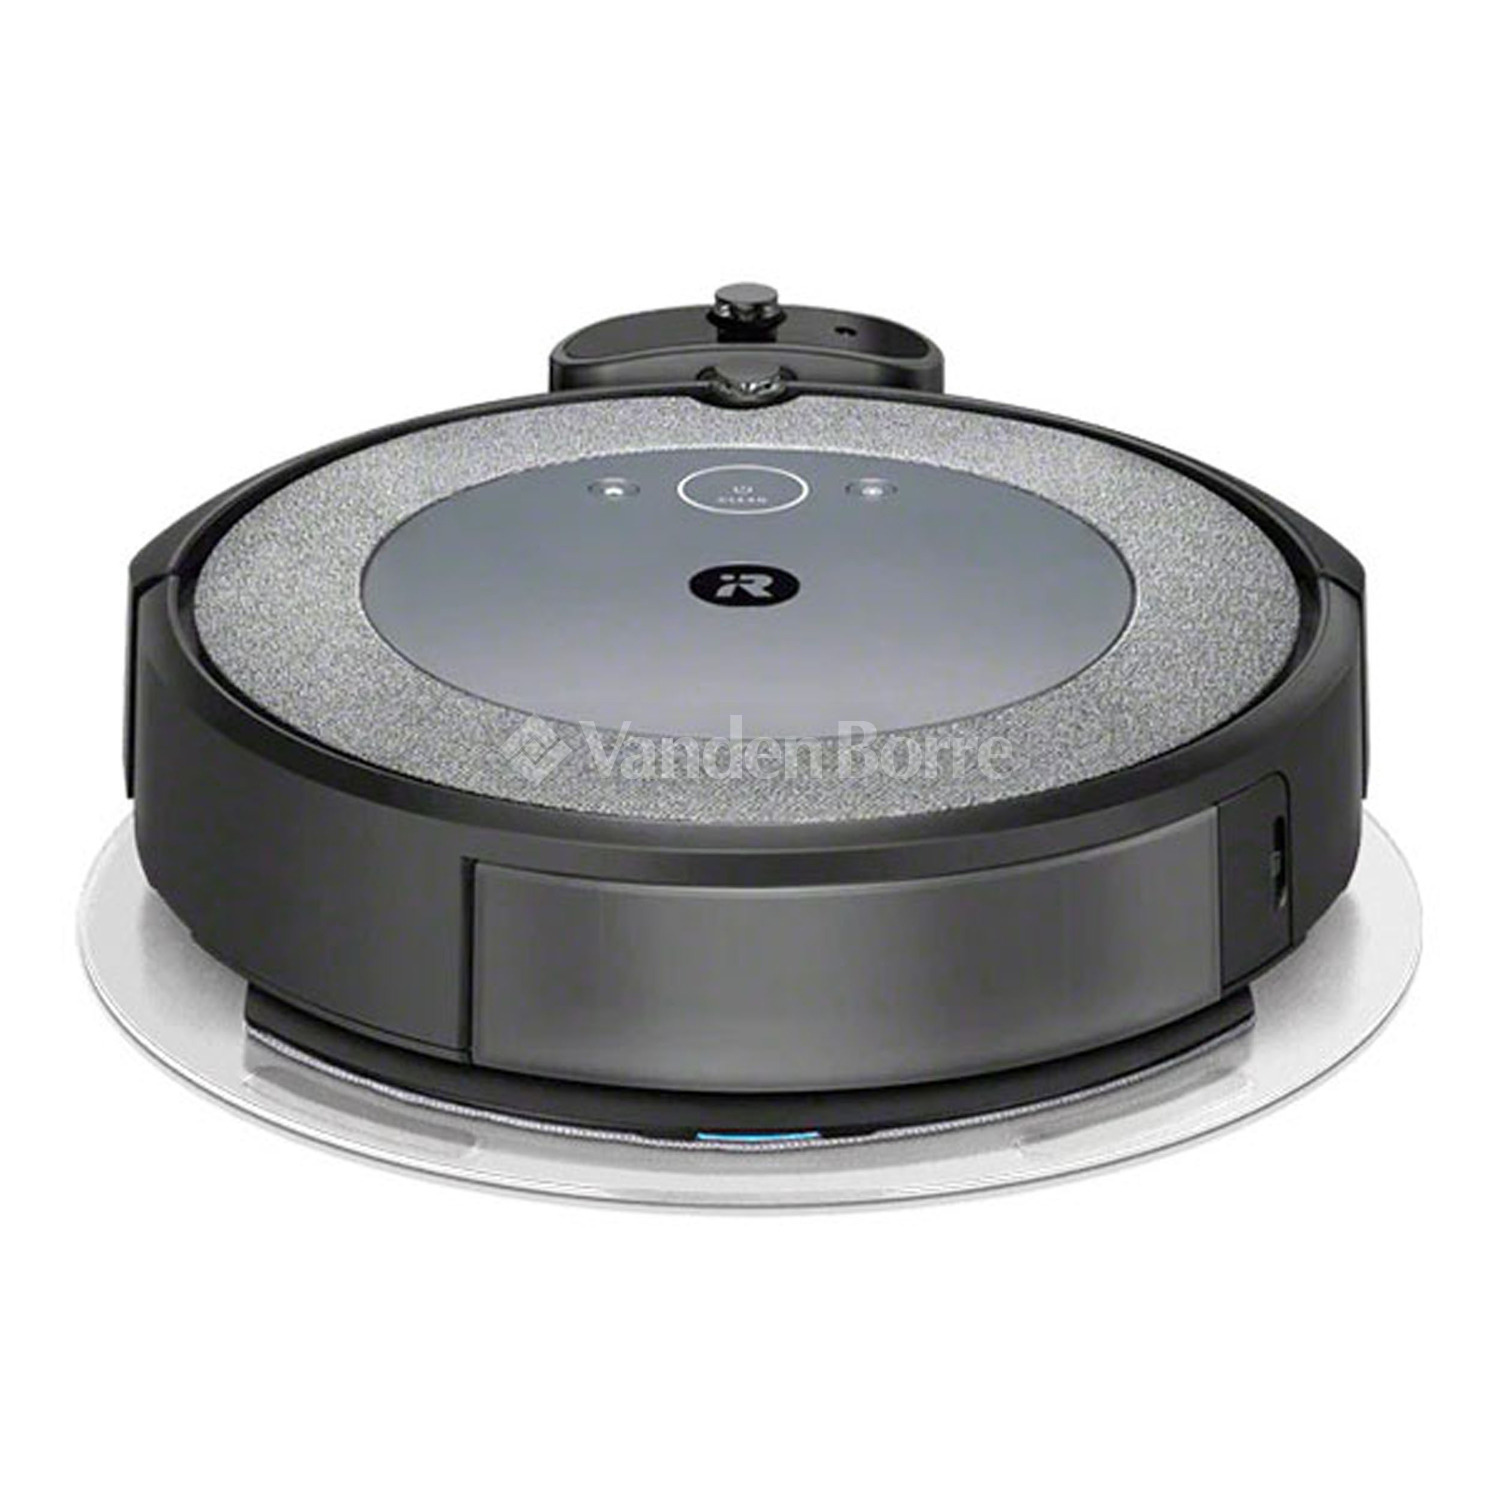 Acheter en ligne IROBOT Roomba Combo i8 à bons prix et en toute sécurité 